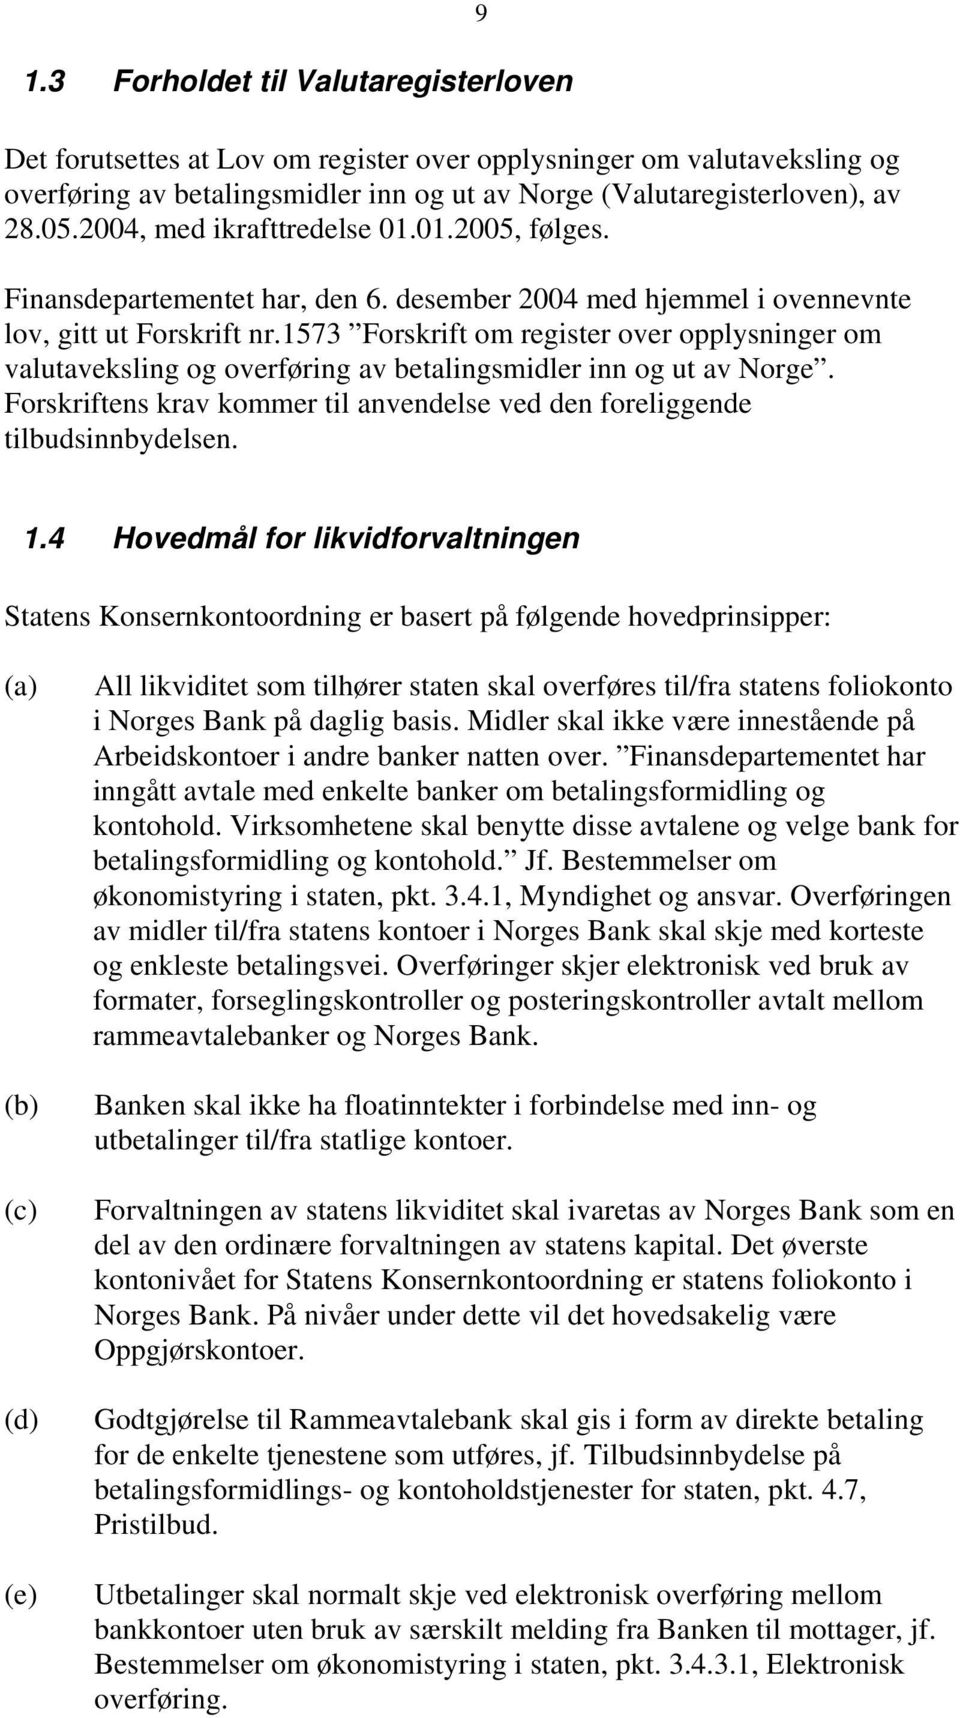 1573 Forskrift om register over opplysninger om valutaveksling og overføring av betalingsmidler inn og ut av Norge. Forskriftens krav kommer til anvendelse ved den foreliggende tilbudsinnbydelsen.